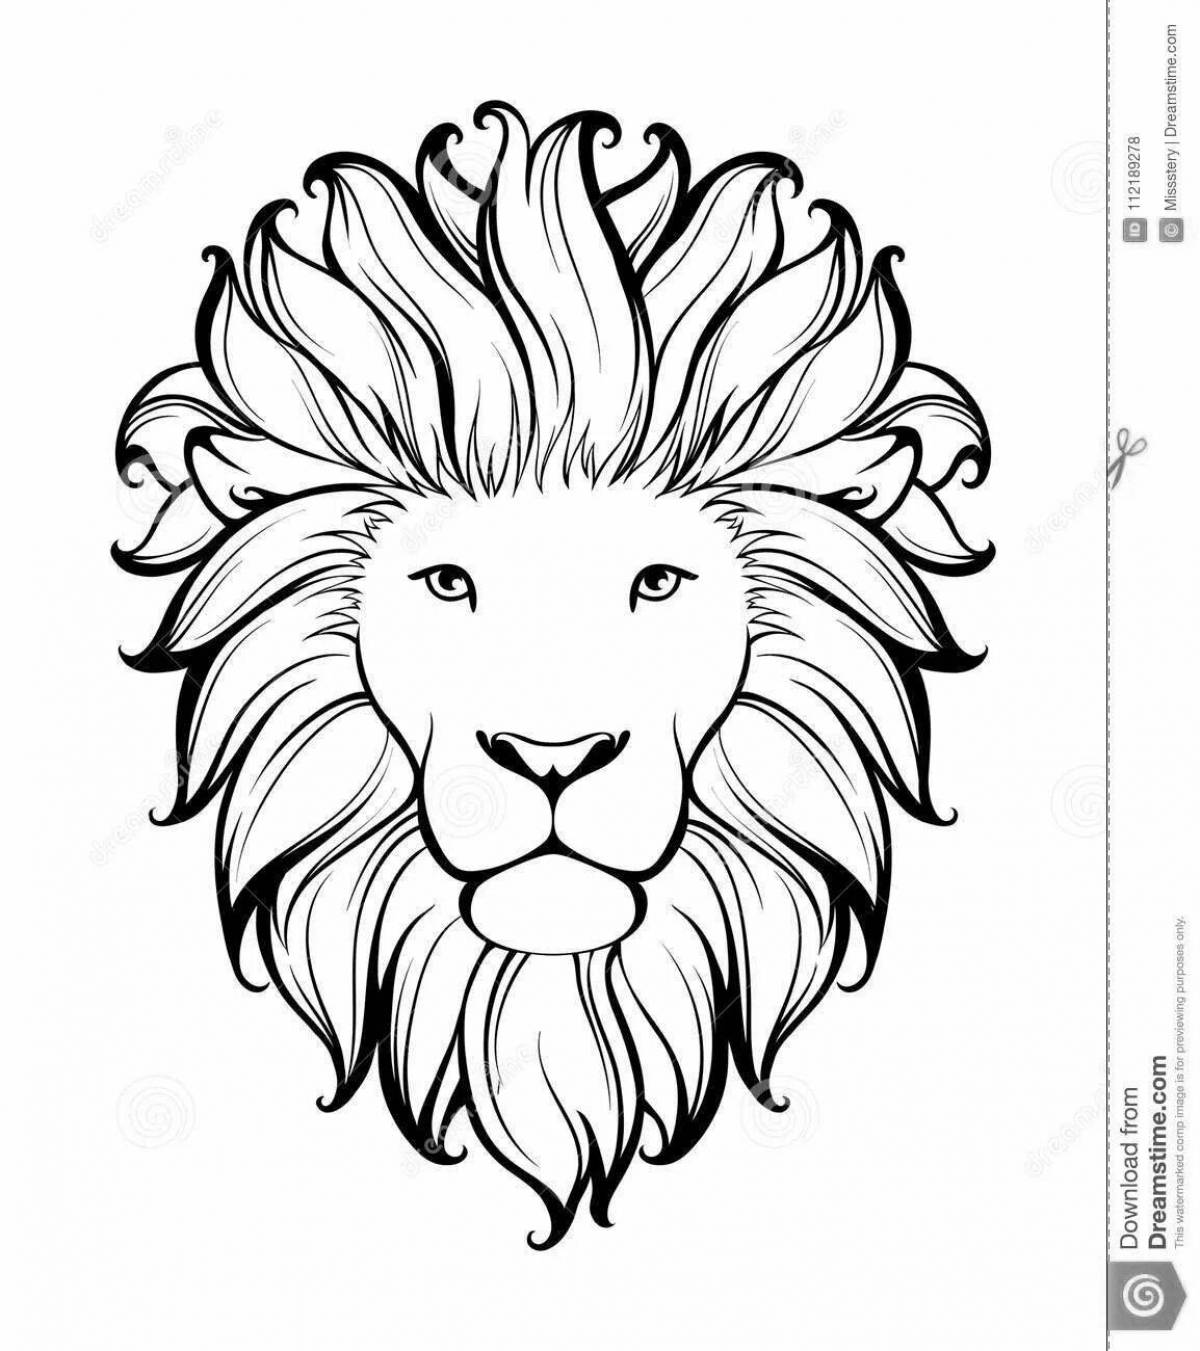 Coloring grandiose lion head